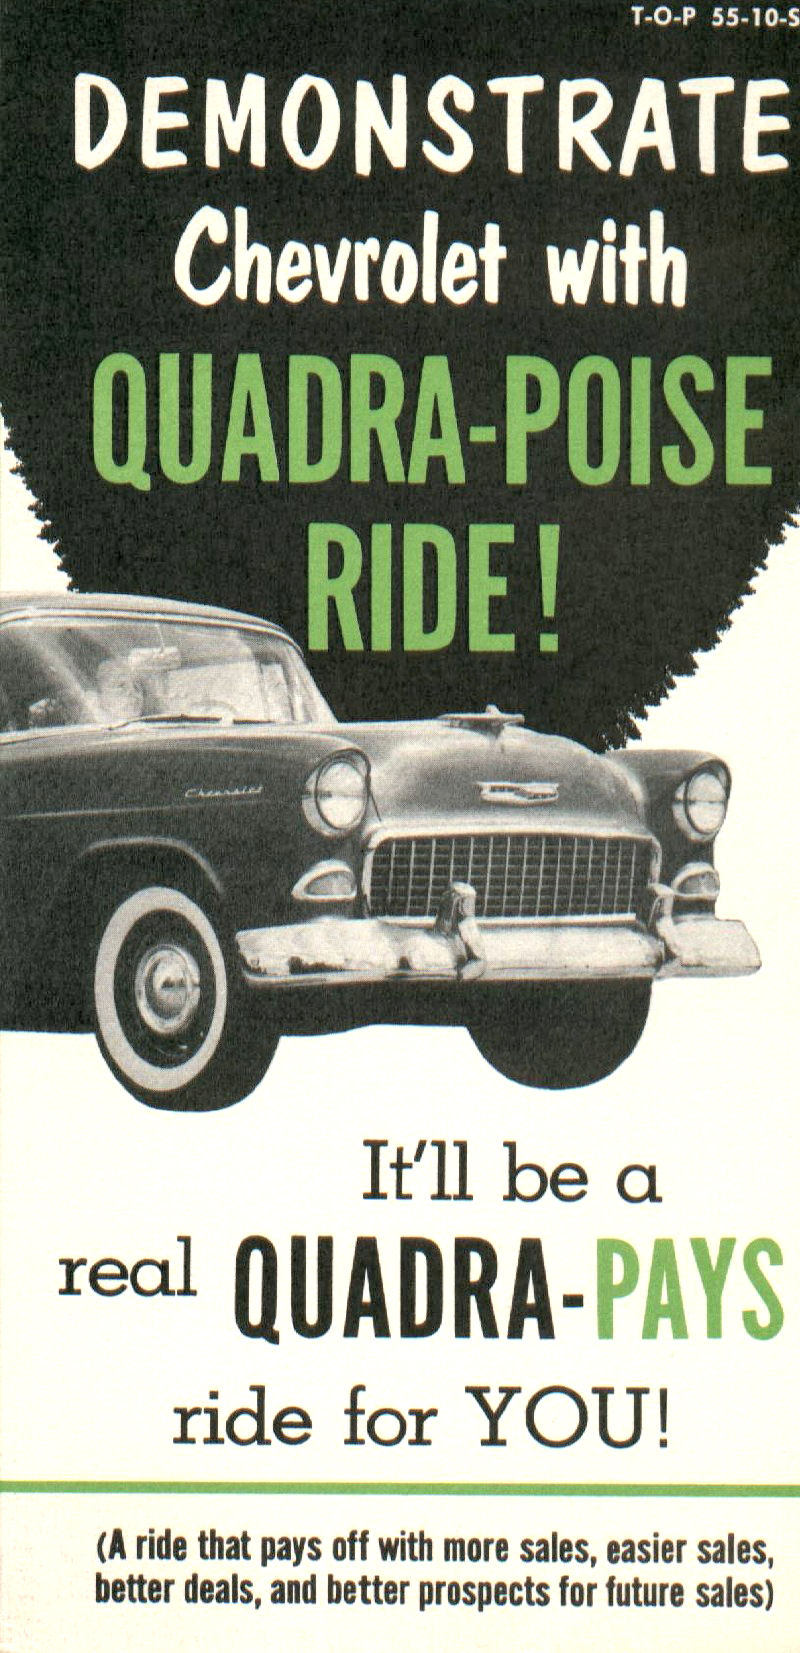 1955_Chevrolet_Quadra-Poise_Ride-01